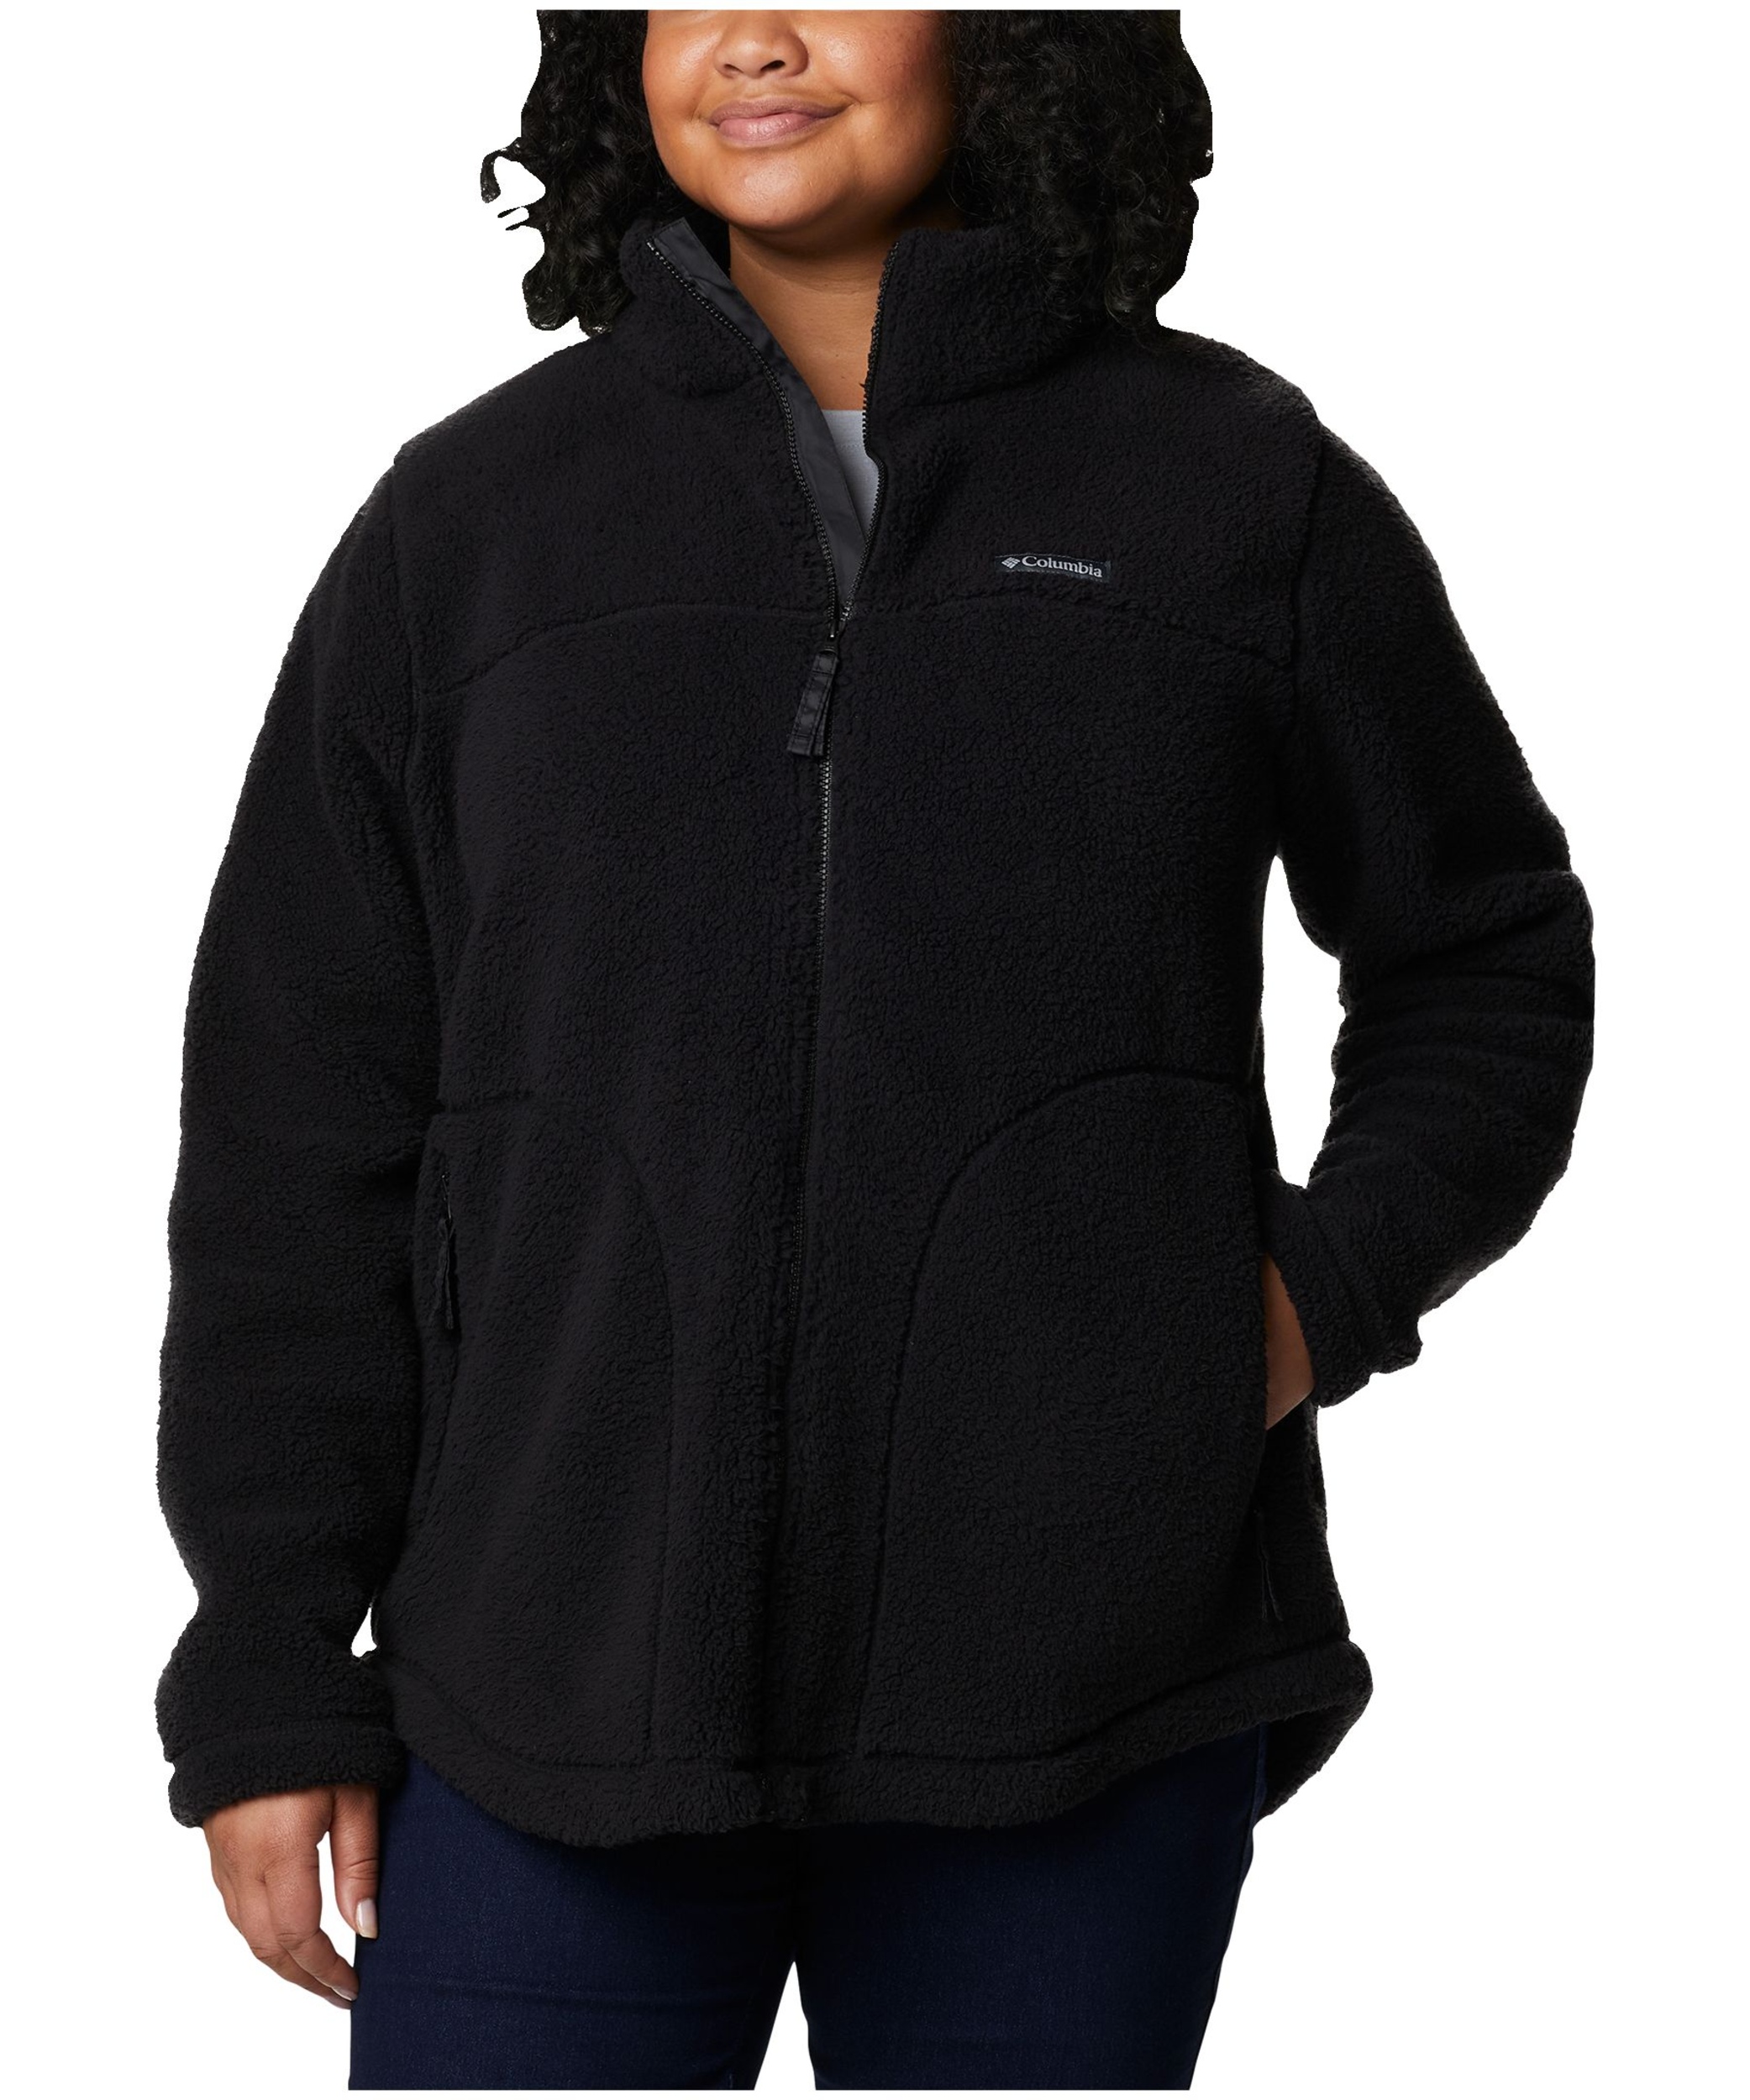 Columbia Women's West Bend Full Zip Fleece Jacket | Marks